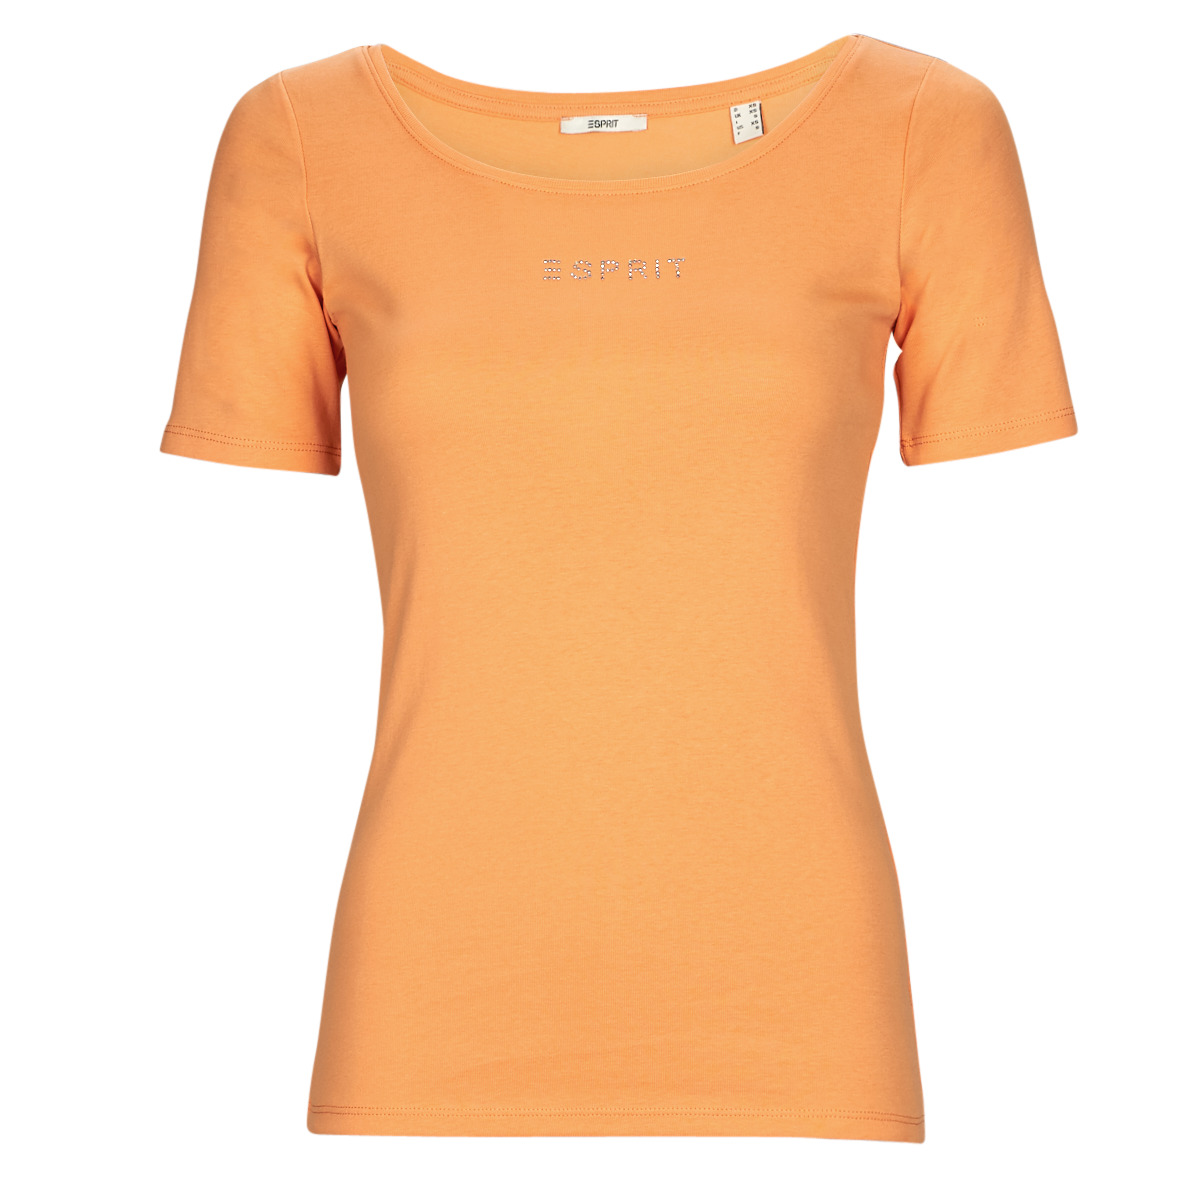 Kleidung Damen T-Shirts Esprit tee Orange